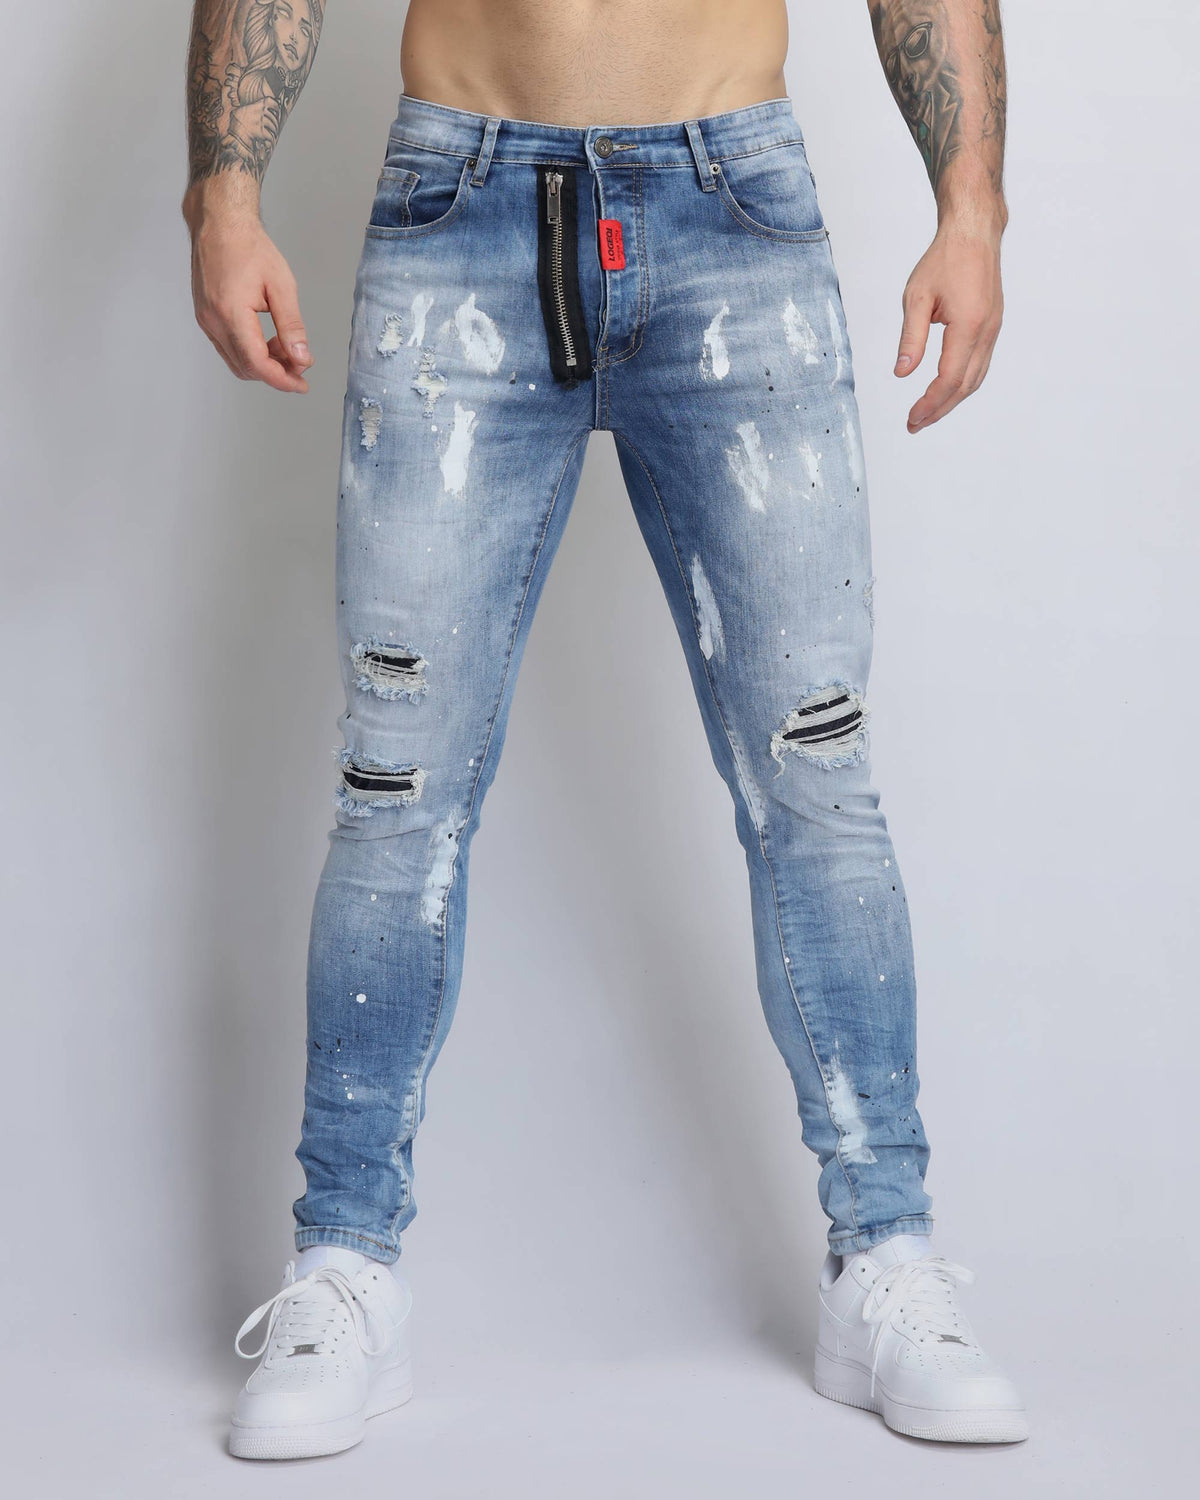 Vintage Spattered Ripped Denim Jeans